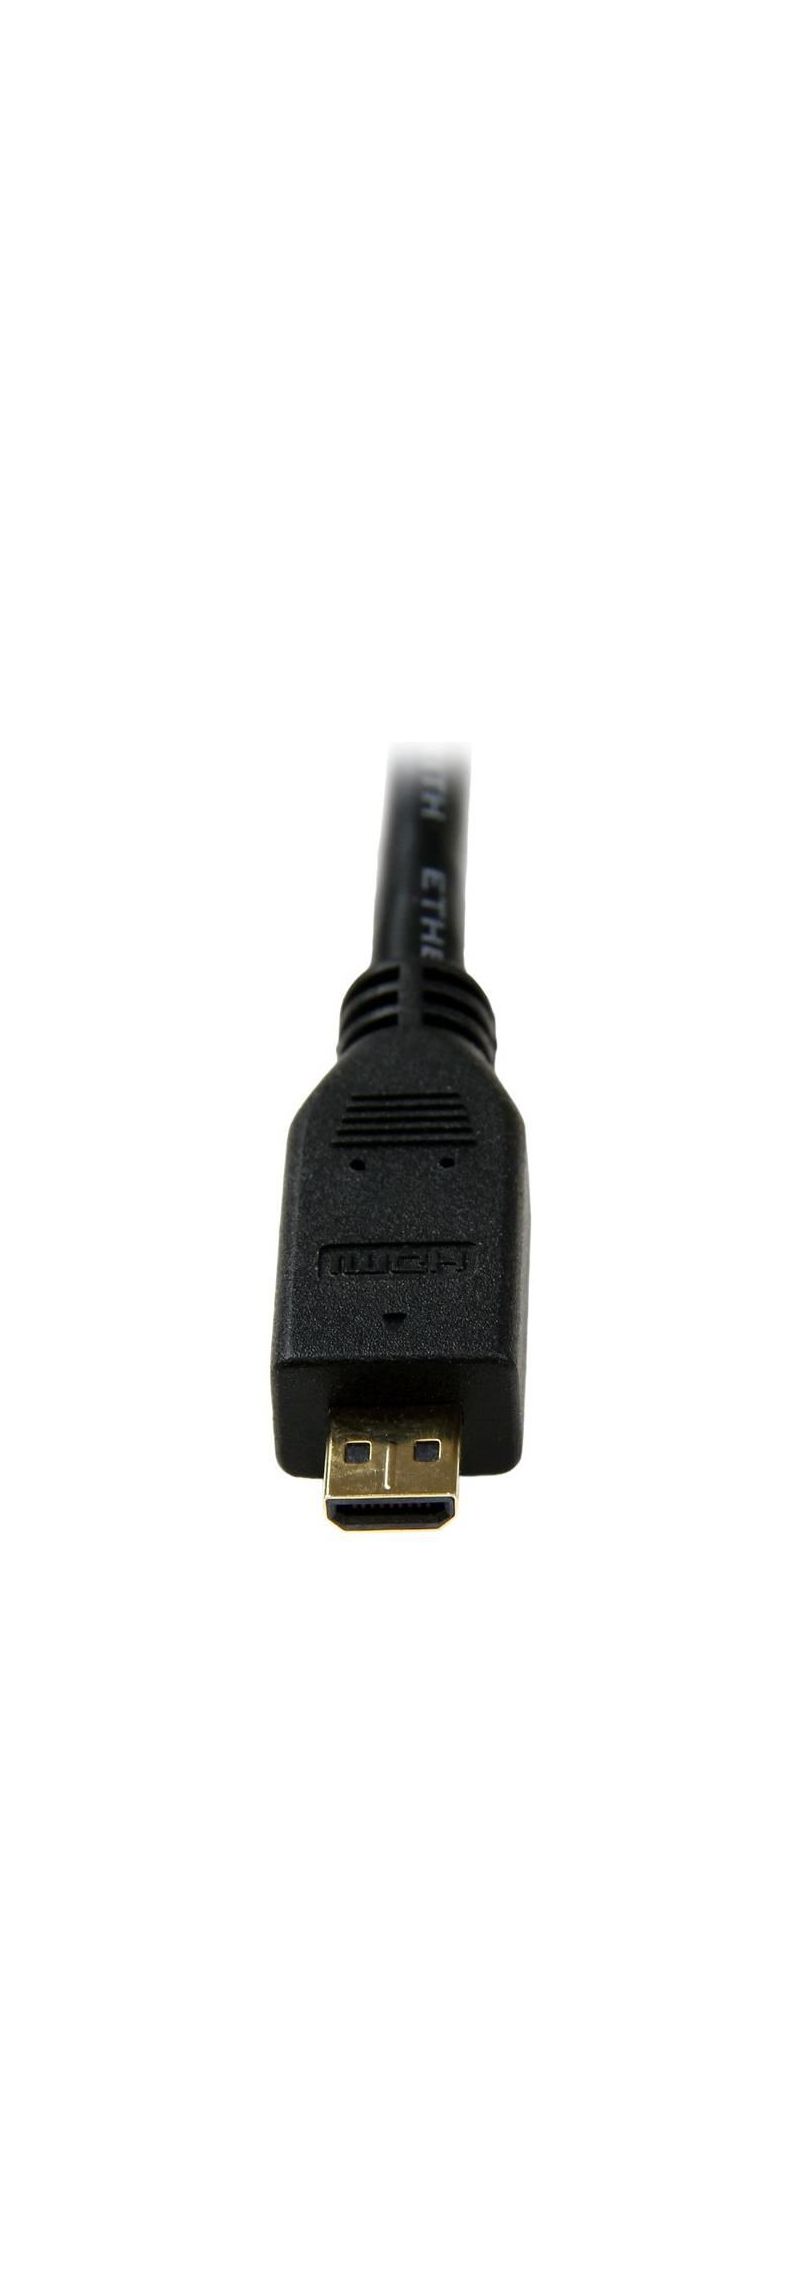 StarTech.com High Speed High Speed HDMI-Kabel mit Ethernet - HDMI auf HDMI Micro - Stecker/Stecker - Video-/Audio-/Netzwerkkabel - HDMI - 32 AWG - HDMI, 19-polig (M) - 19-polig Micro-HDMI (M) - 3,0m - abgeschirmt - Schwarz (HDADMM3M)